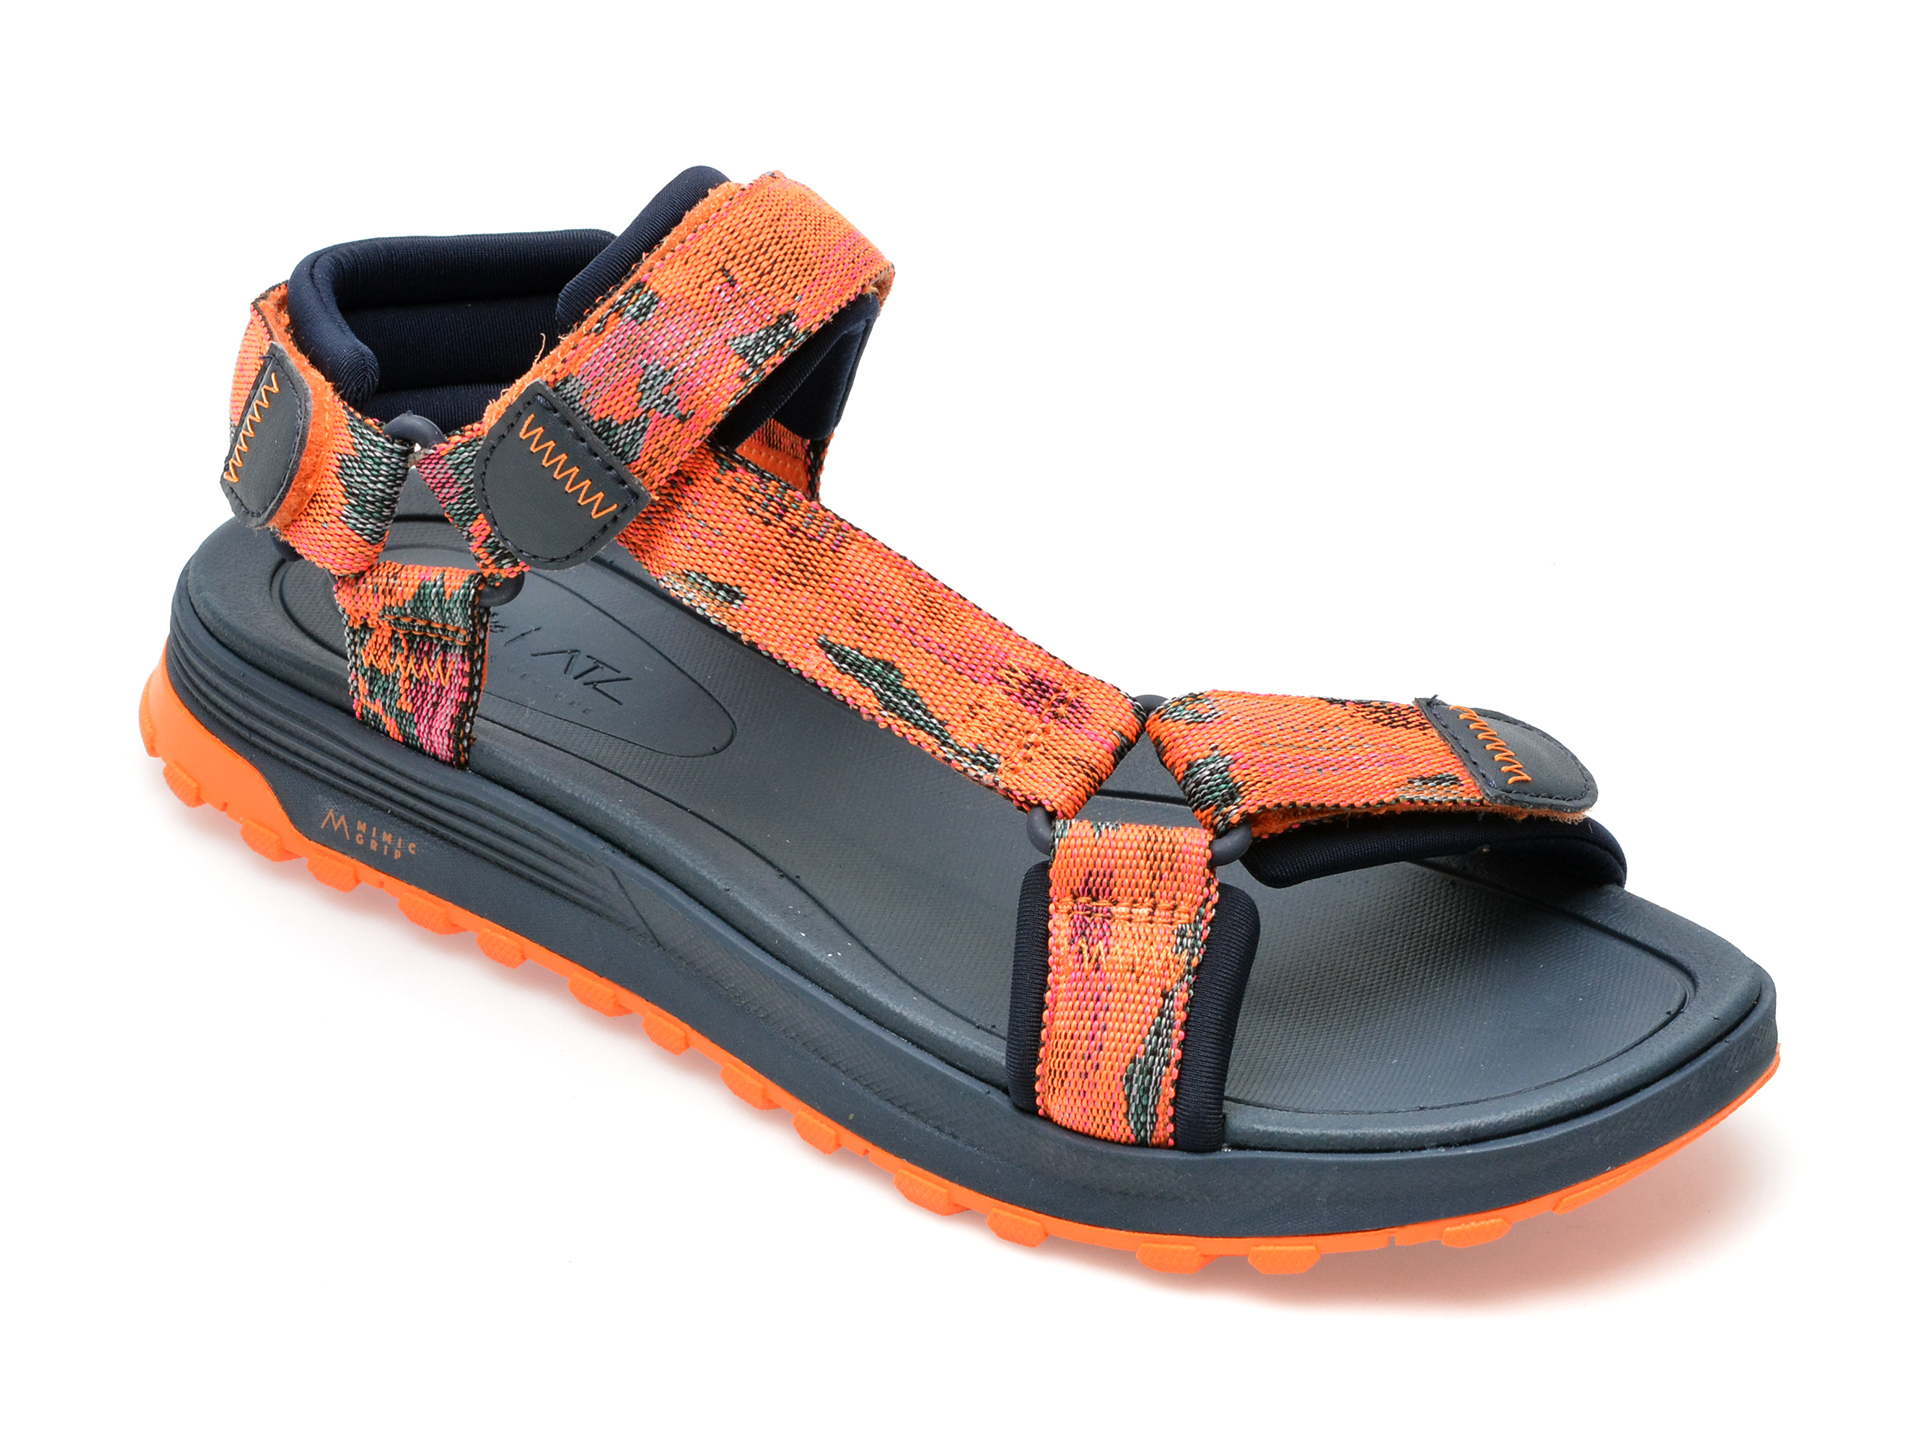 Sandale CLARKS portocalii, ATL TREK SEA 0912, din material textil barbati 2023-03-21